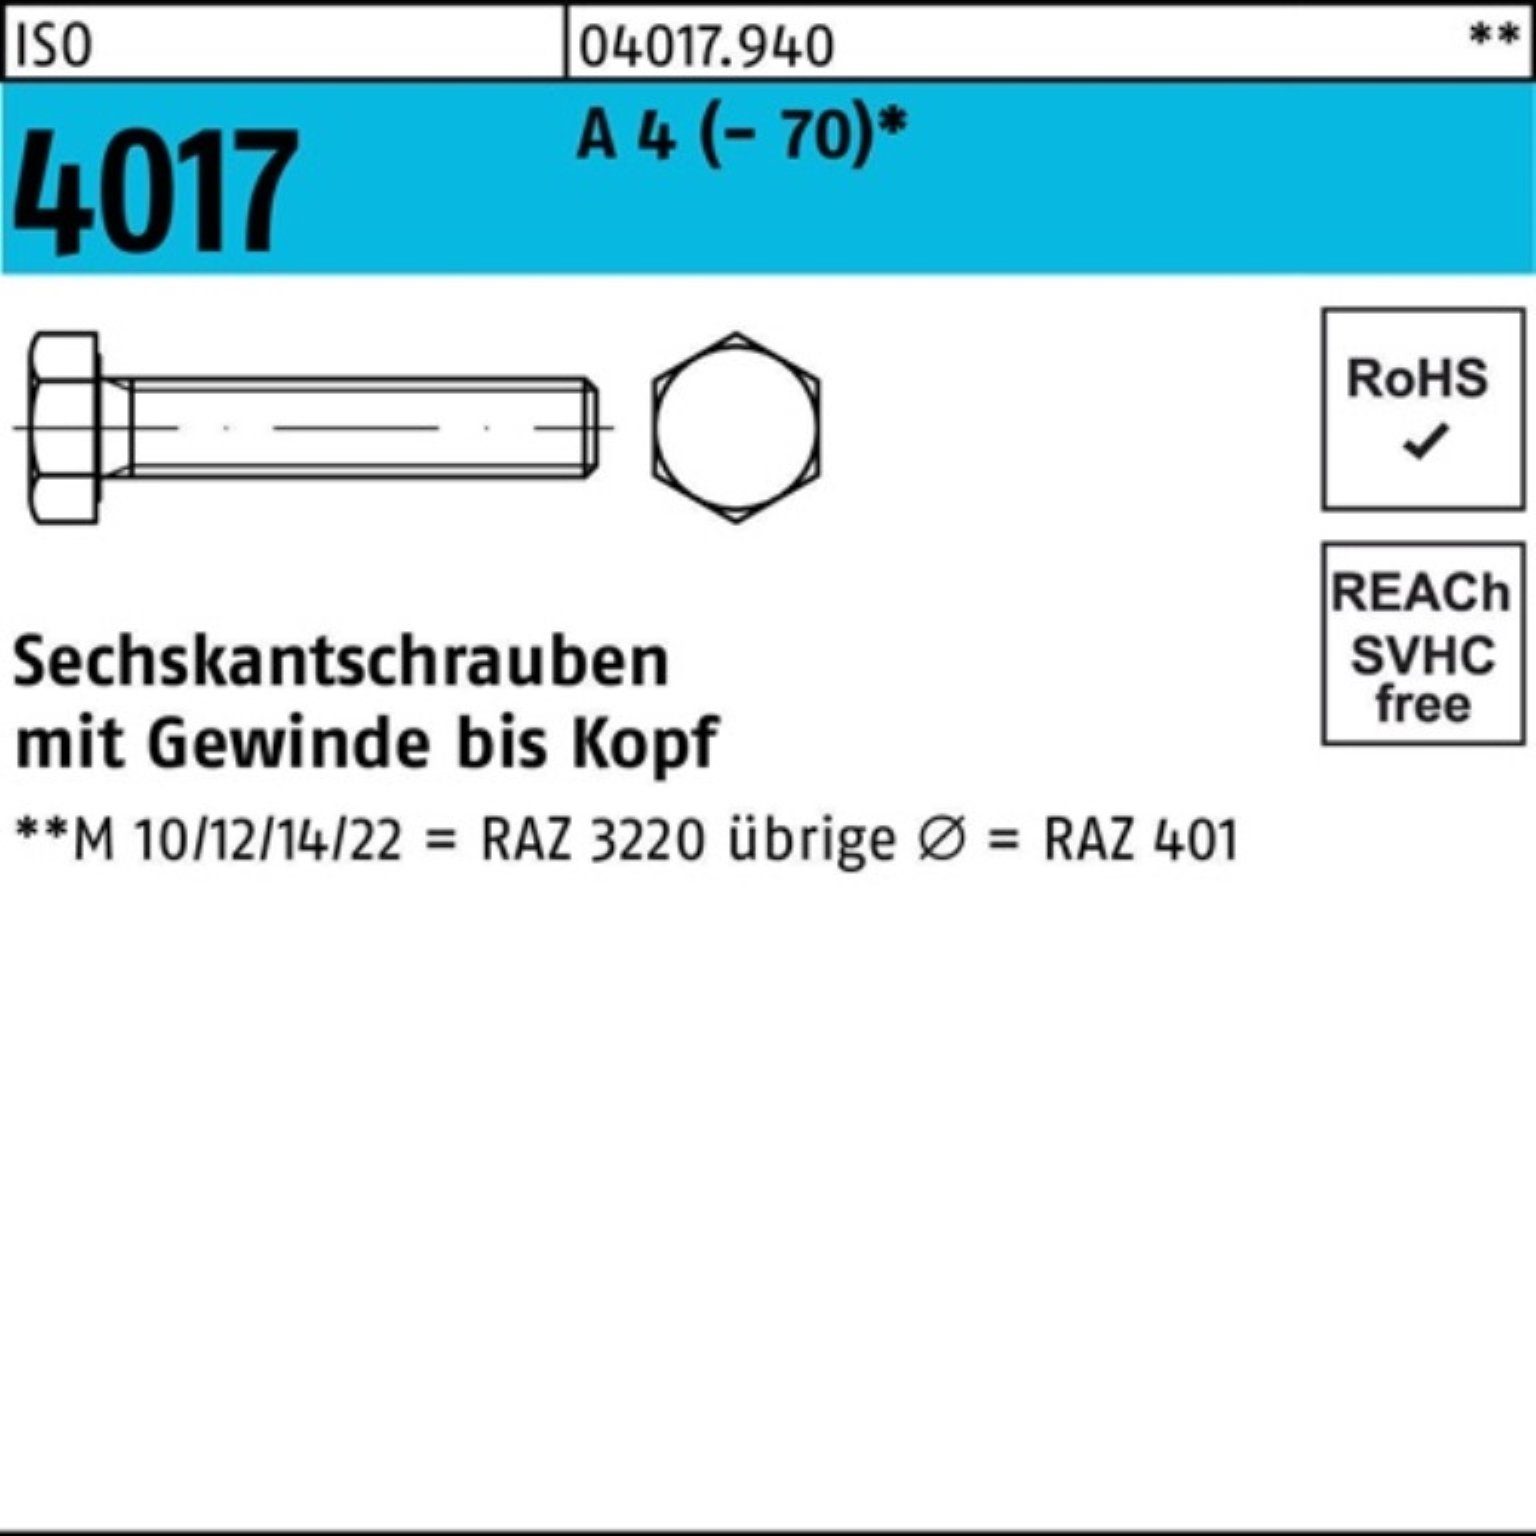 Bufab Sechskantschraube 100er Pack Sechskantschraube ISO 4017 VG M8x 75 A 4 (70) 50 Stück I